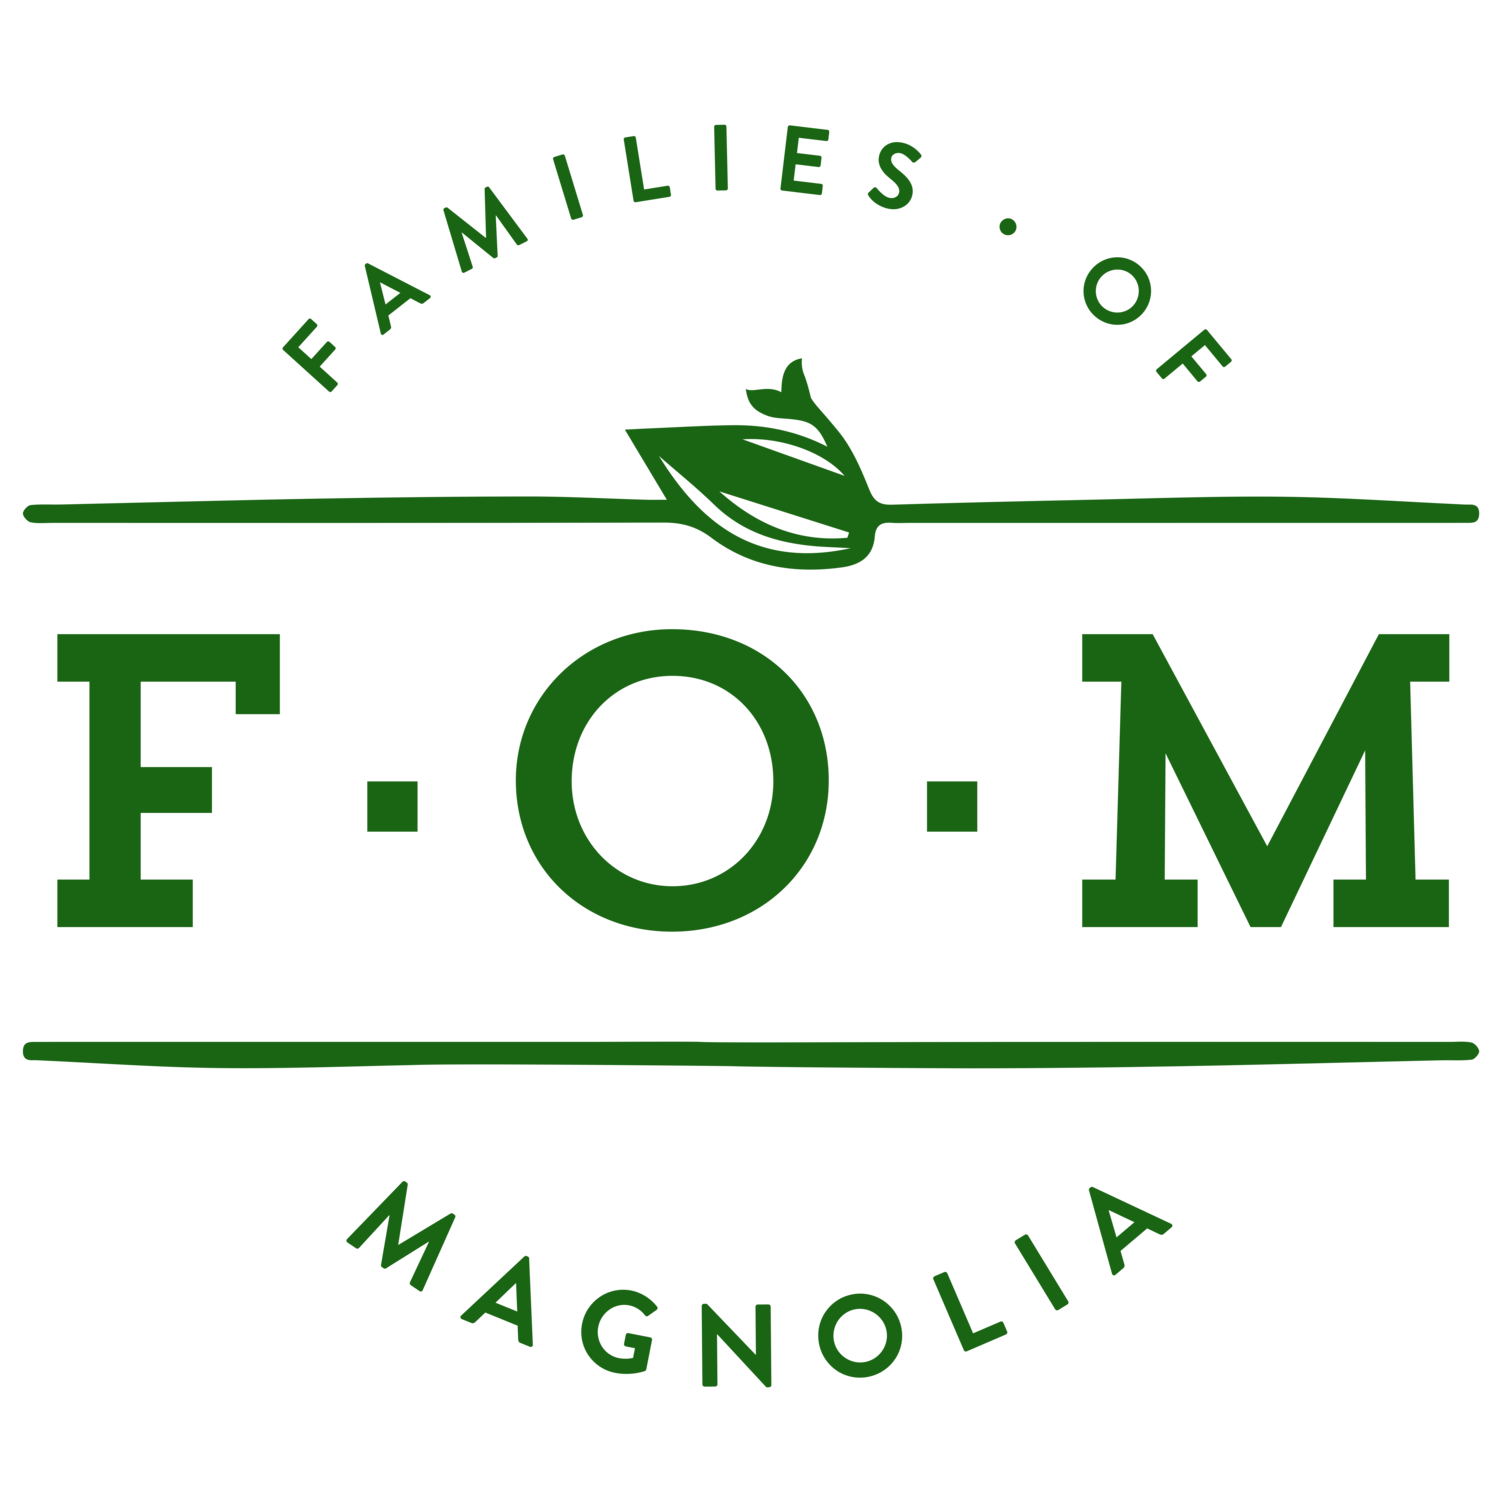 Families of Magnolia